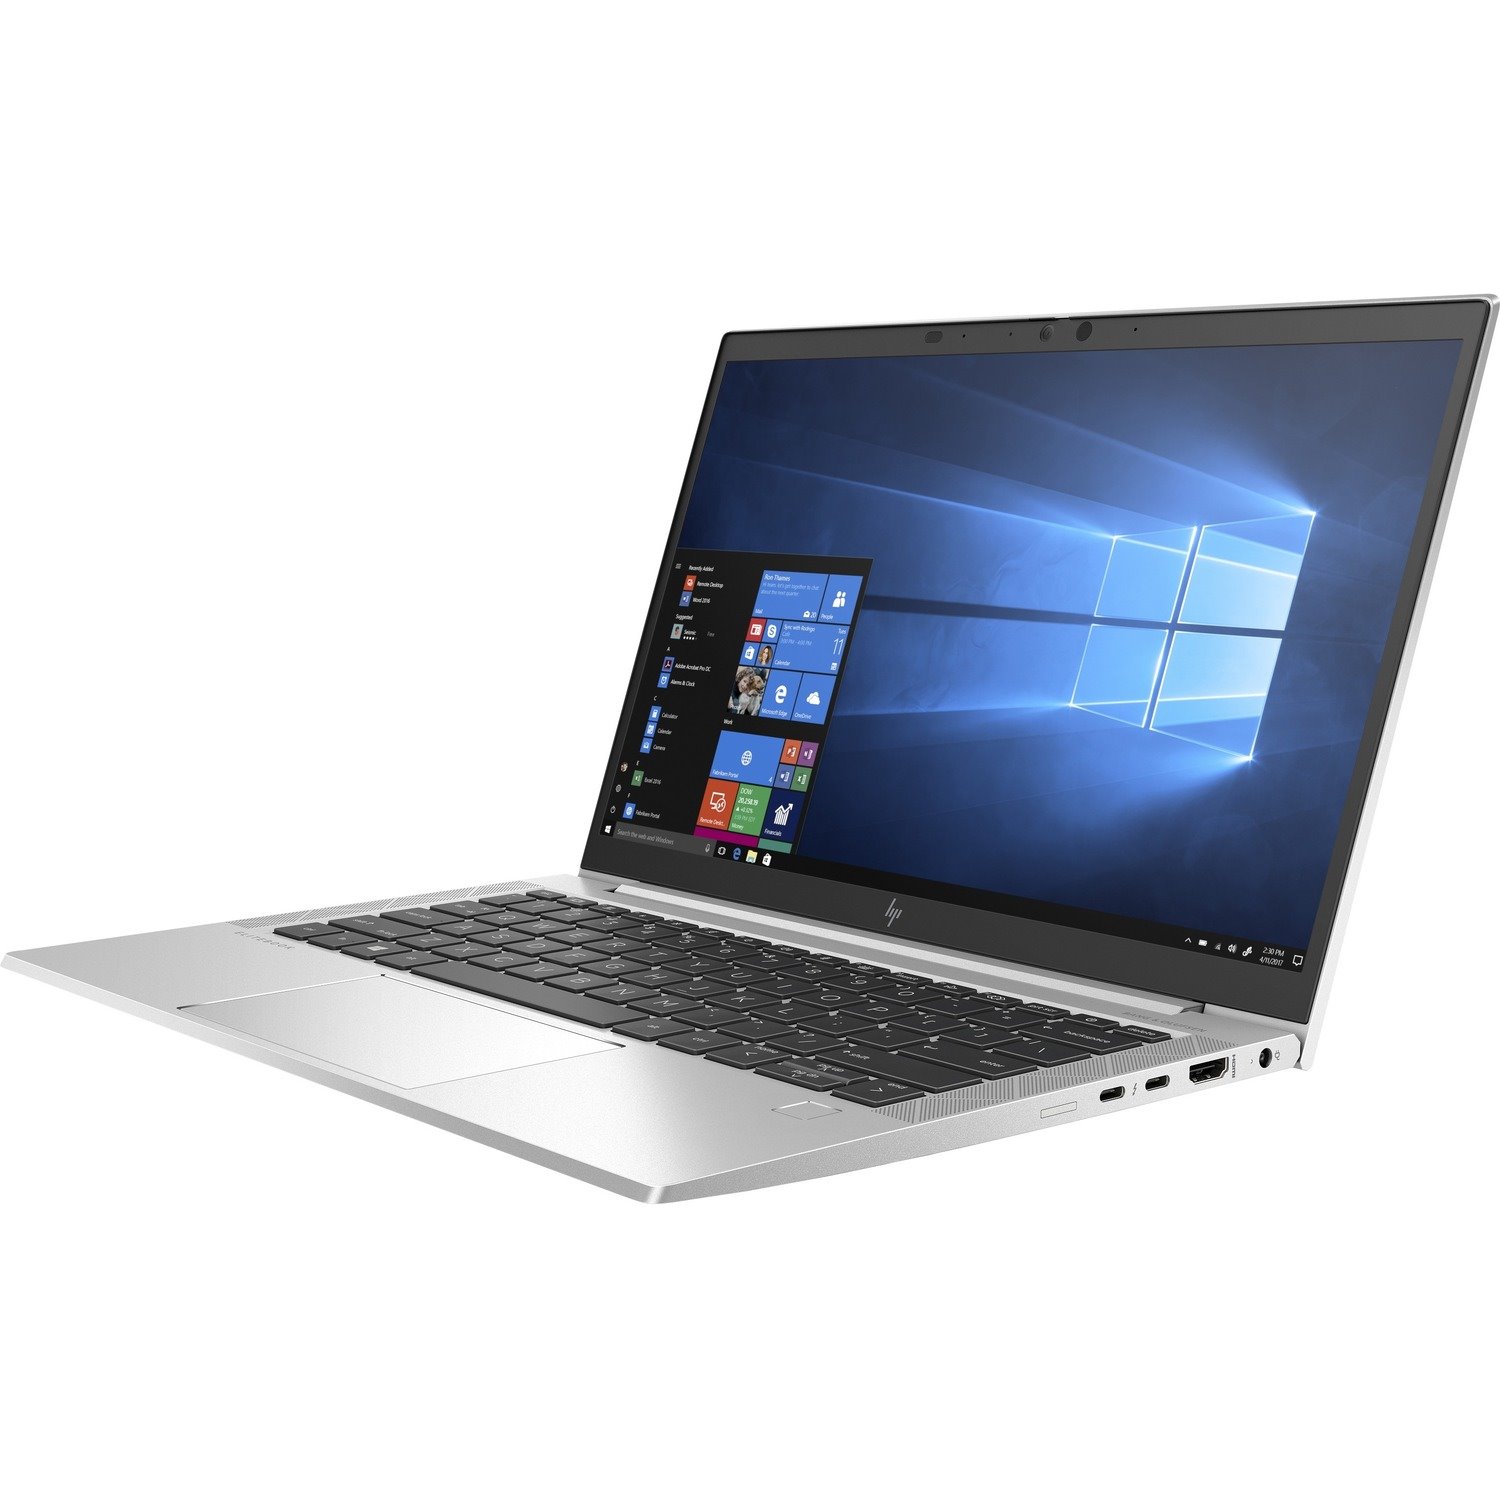 HP EliteBook 830 G7 33.8 cm (13.3") Notebook - Full HD - 1920 x 1080 - Intel Core i5 10th Gen i5-10210U Quad-core (4 Core) 1.60 GHz - 8 GB Total RAM - 256 GB SSD